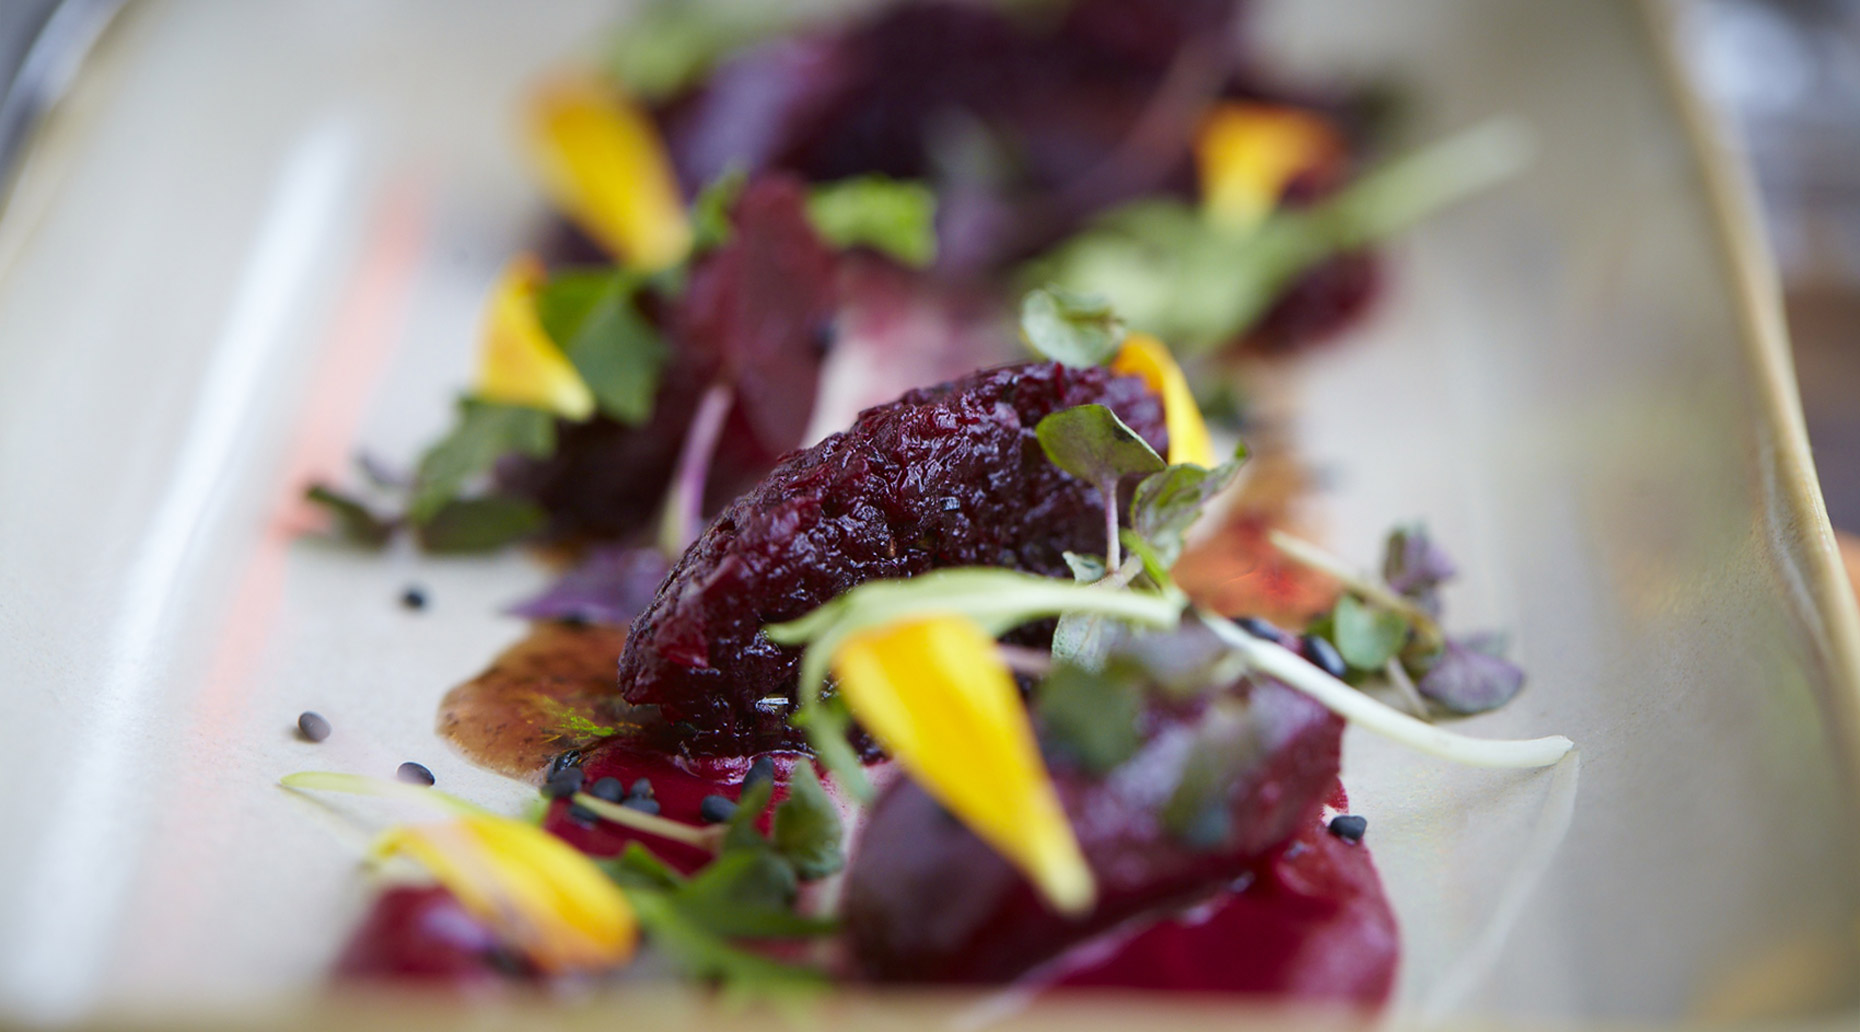 AlanCampbellPhotography, close up fresh fruit salad